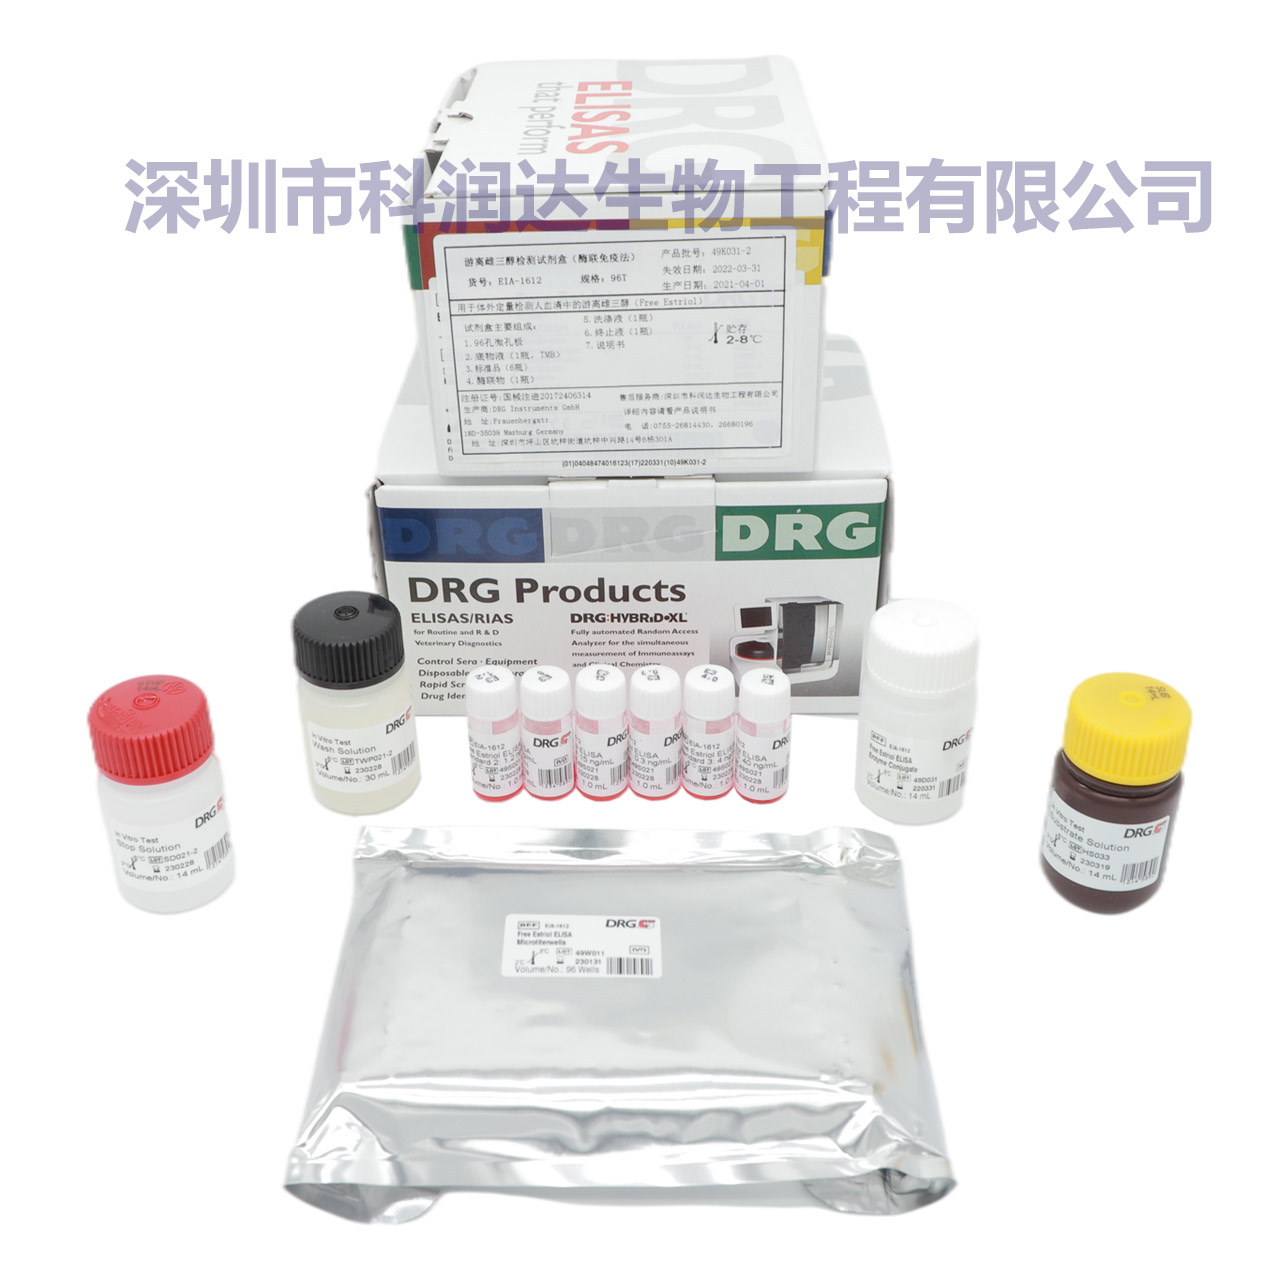 汉坦病毒IgG抗体检测试剂盒